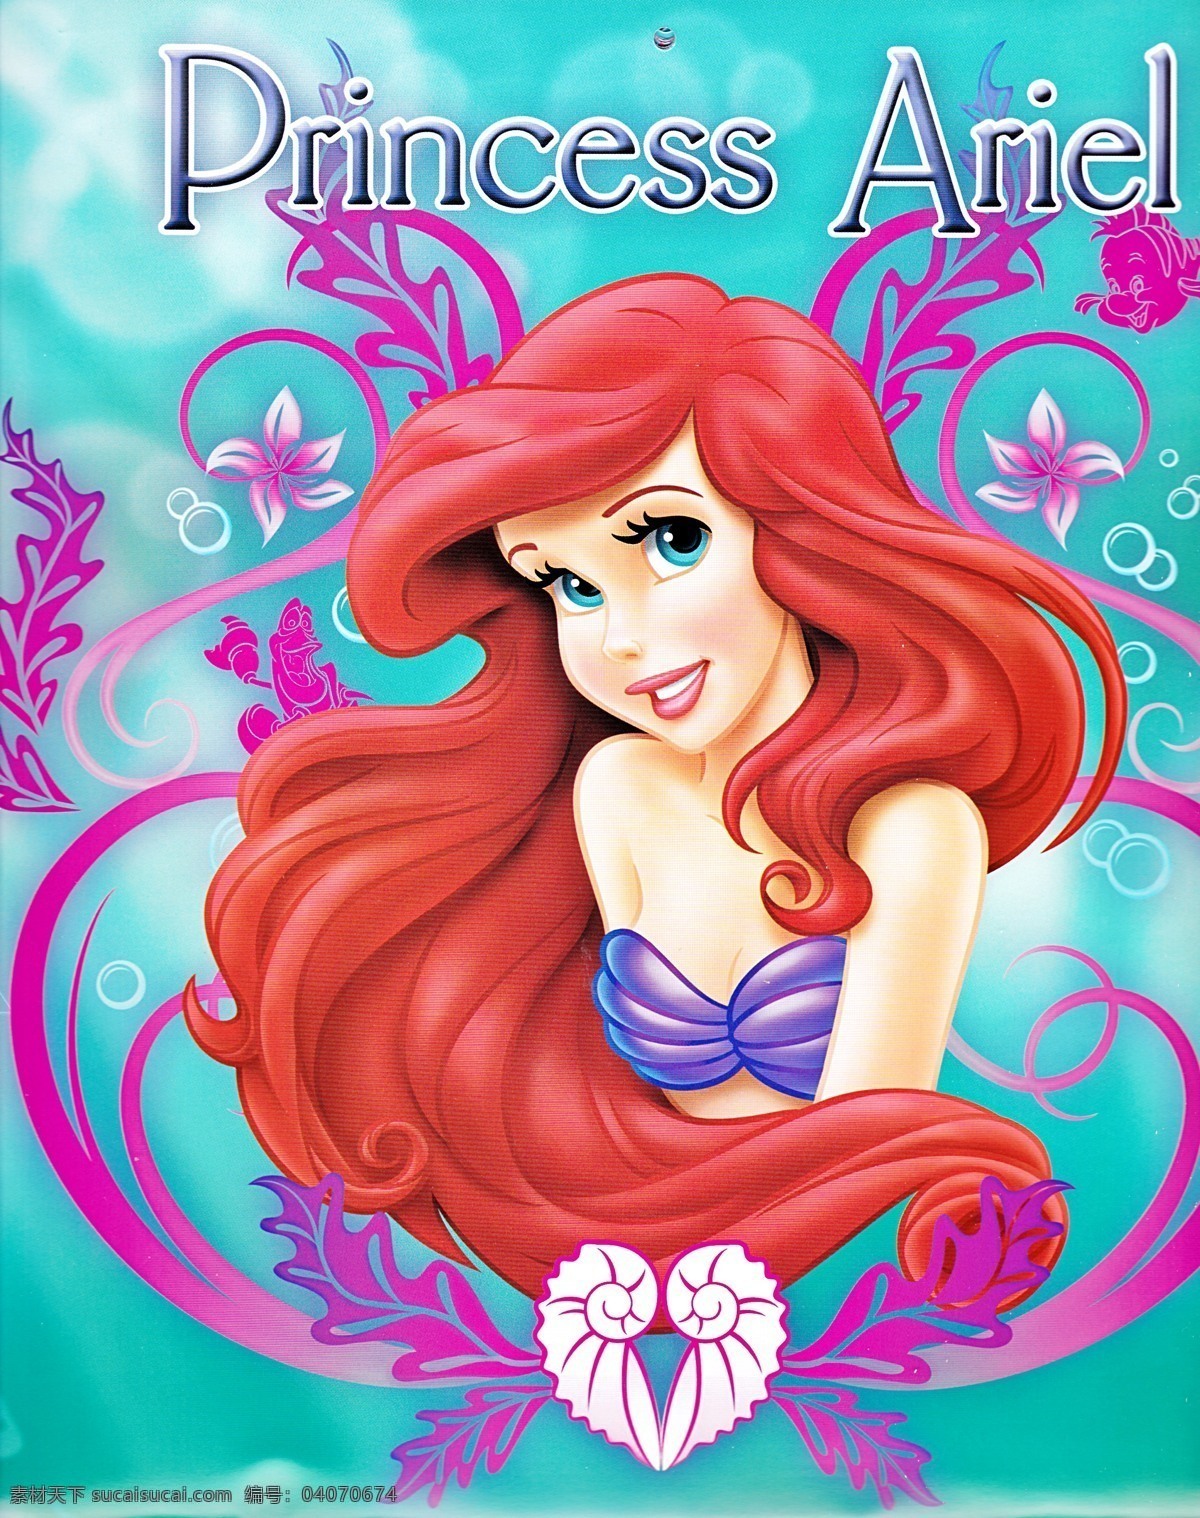 美人鱼 海的女儿 公主 画册 人鱼公主 迪士尼公主 迪士尼卡通 爱丽儿 动漫人物 动漫动画